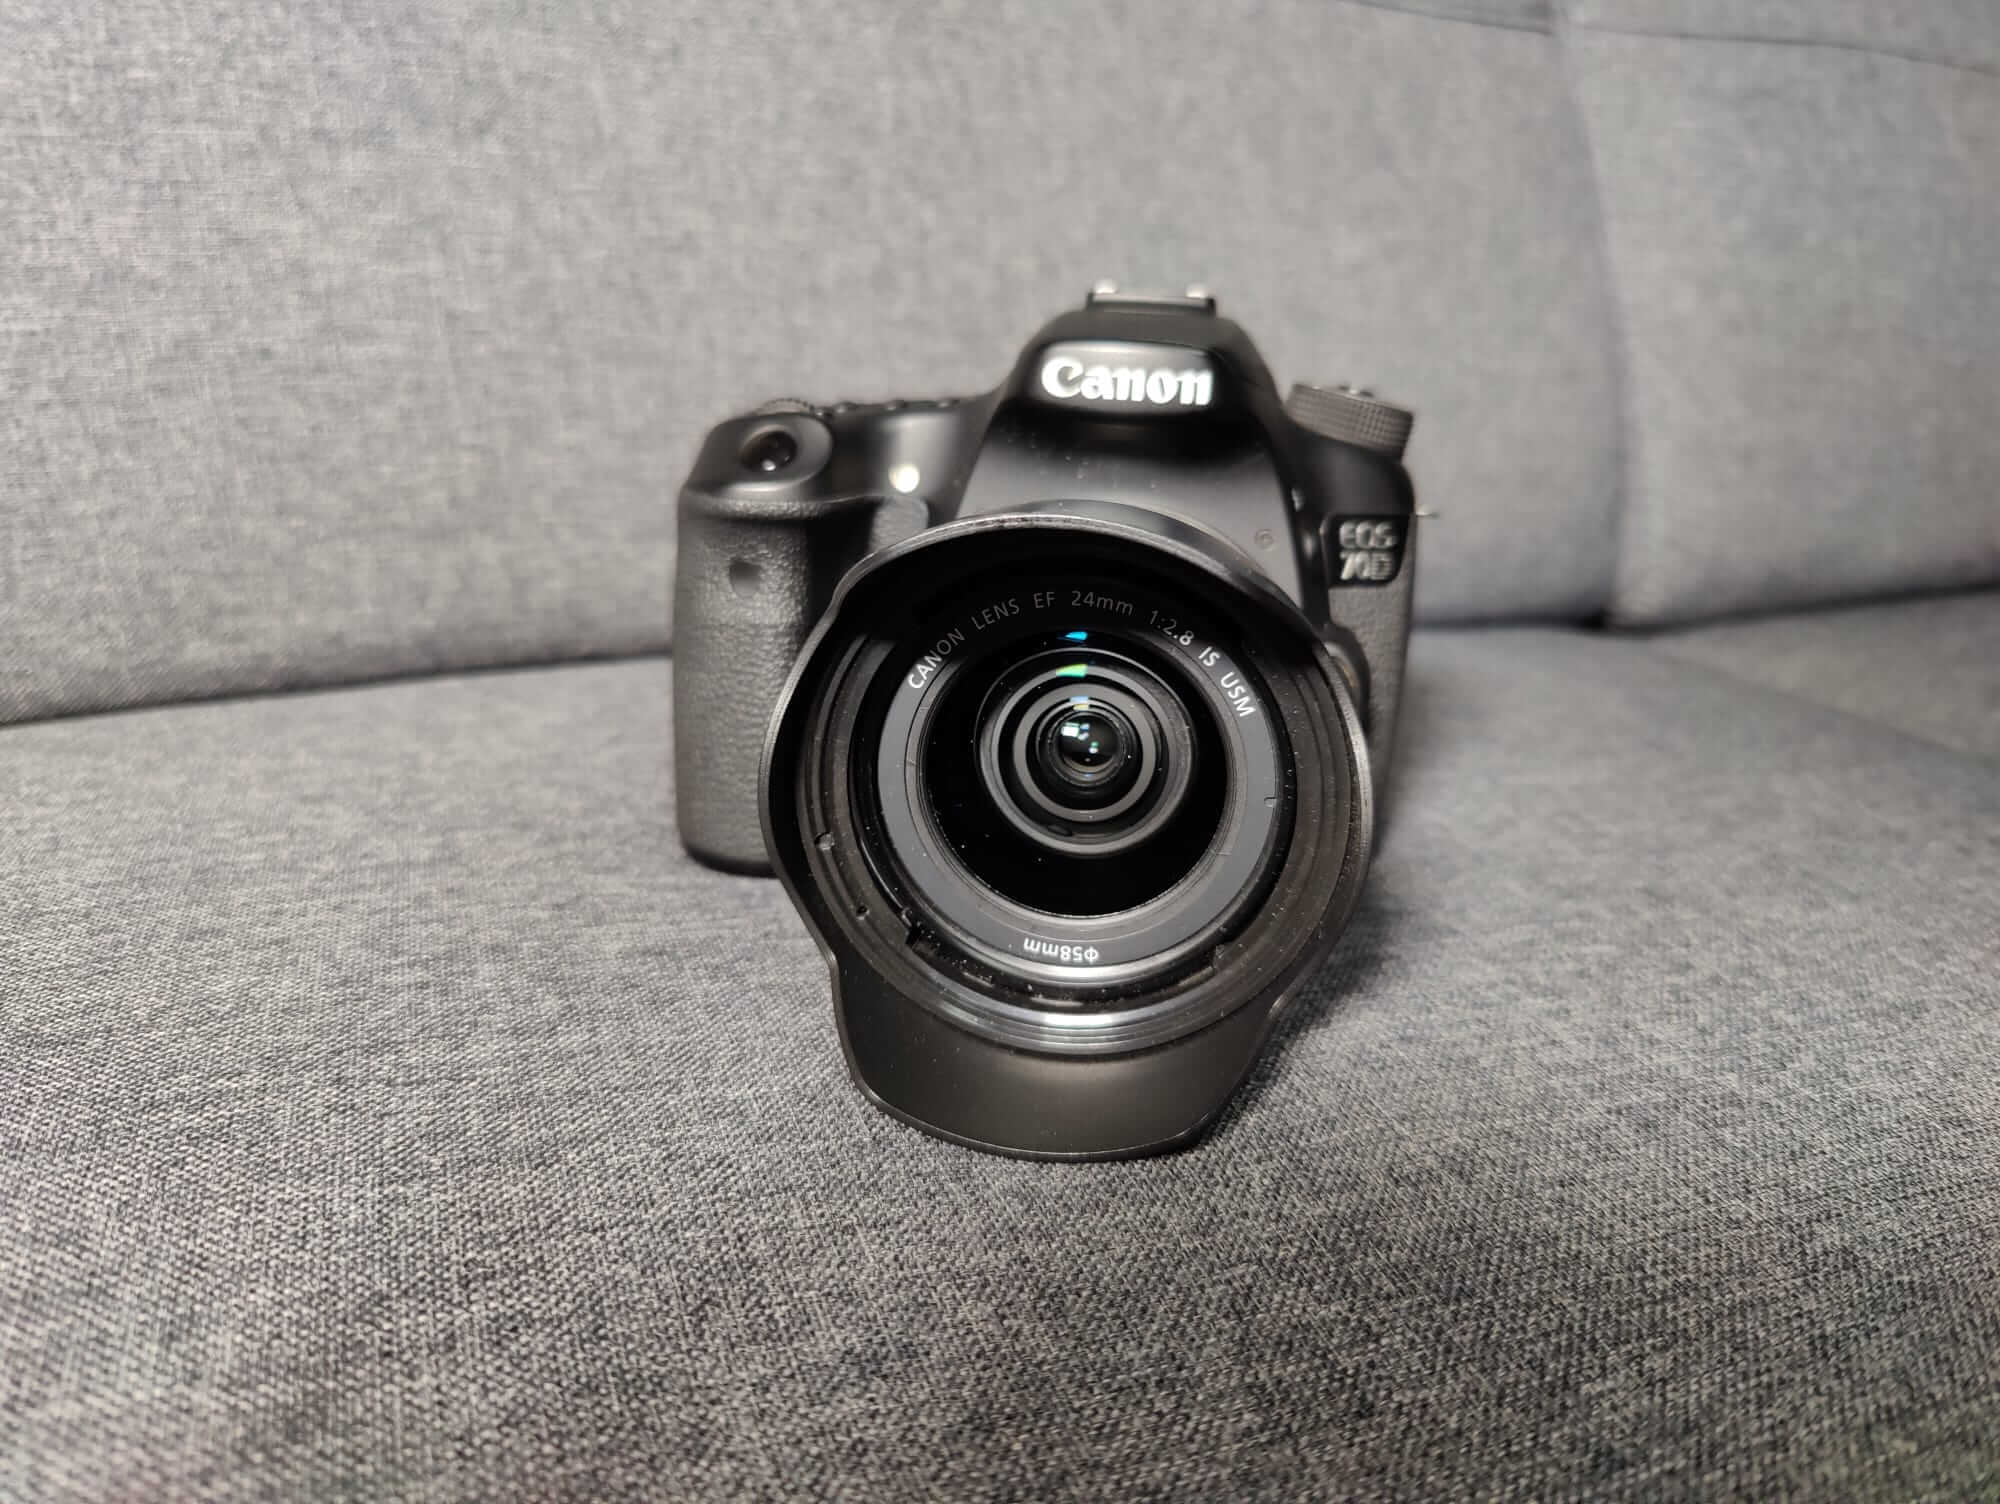 Canon 70D DSLR mit 24mm f/2.8 IS USM Objektiv - 7c99ecff-764a-485b-a250-c8f0131ba657